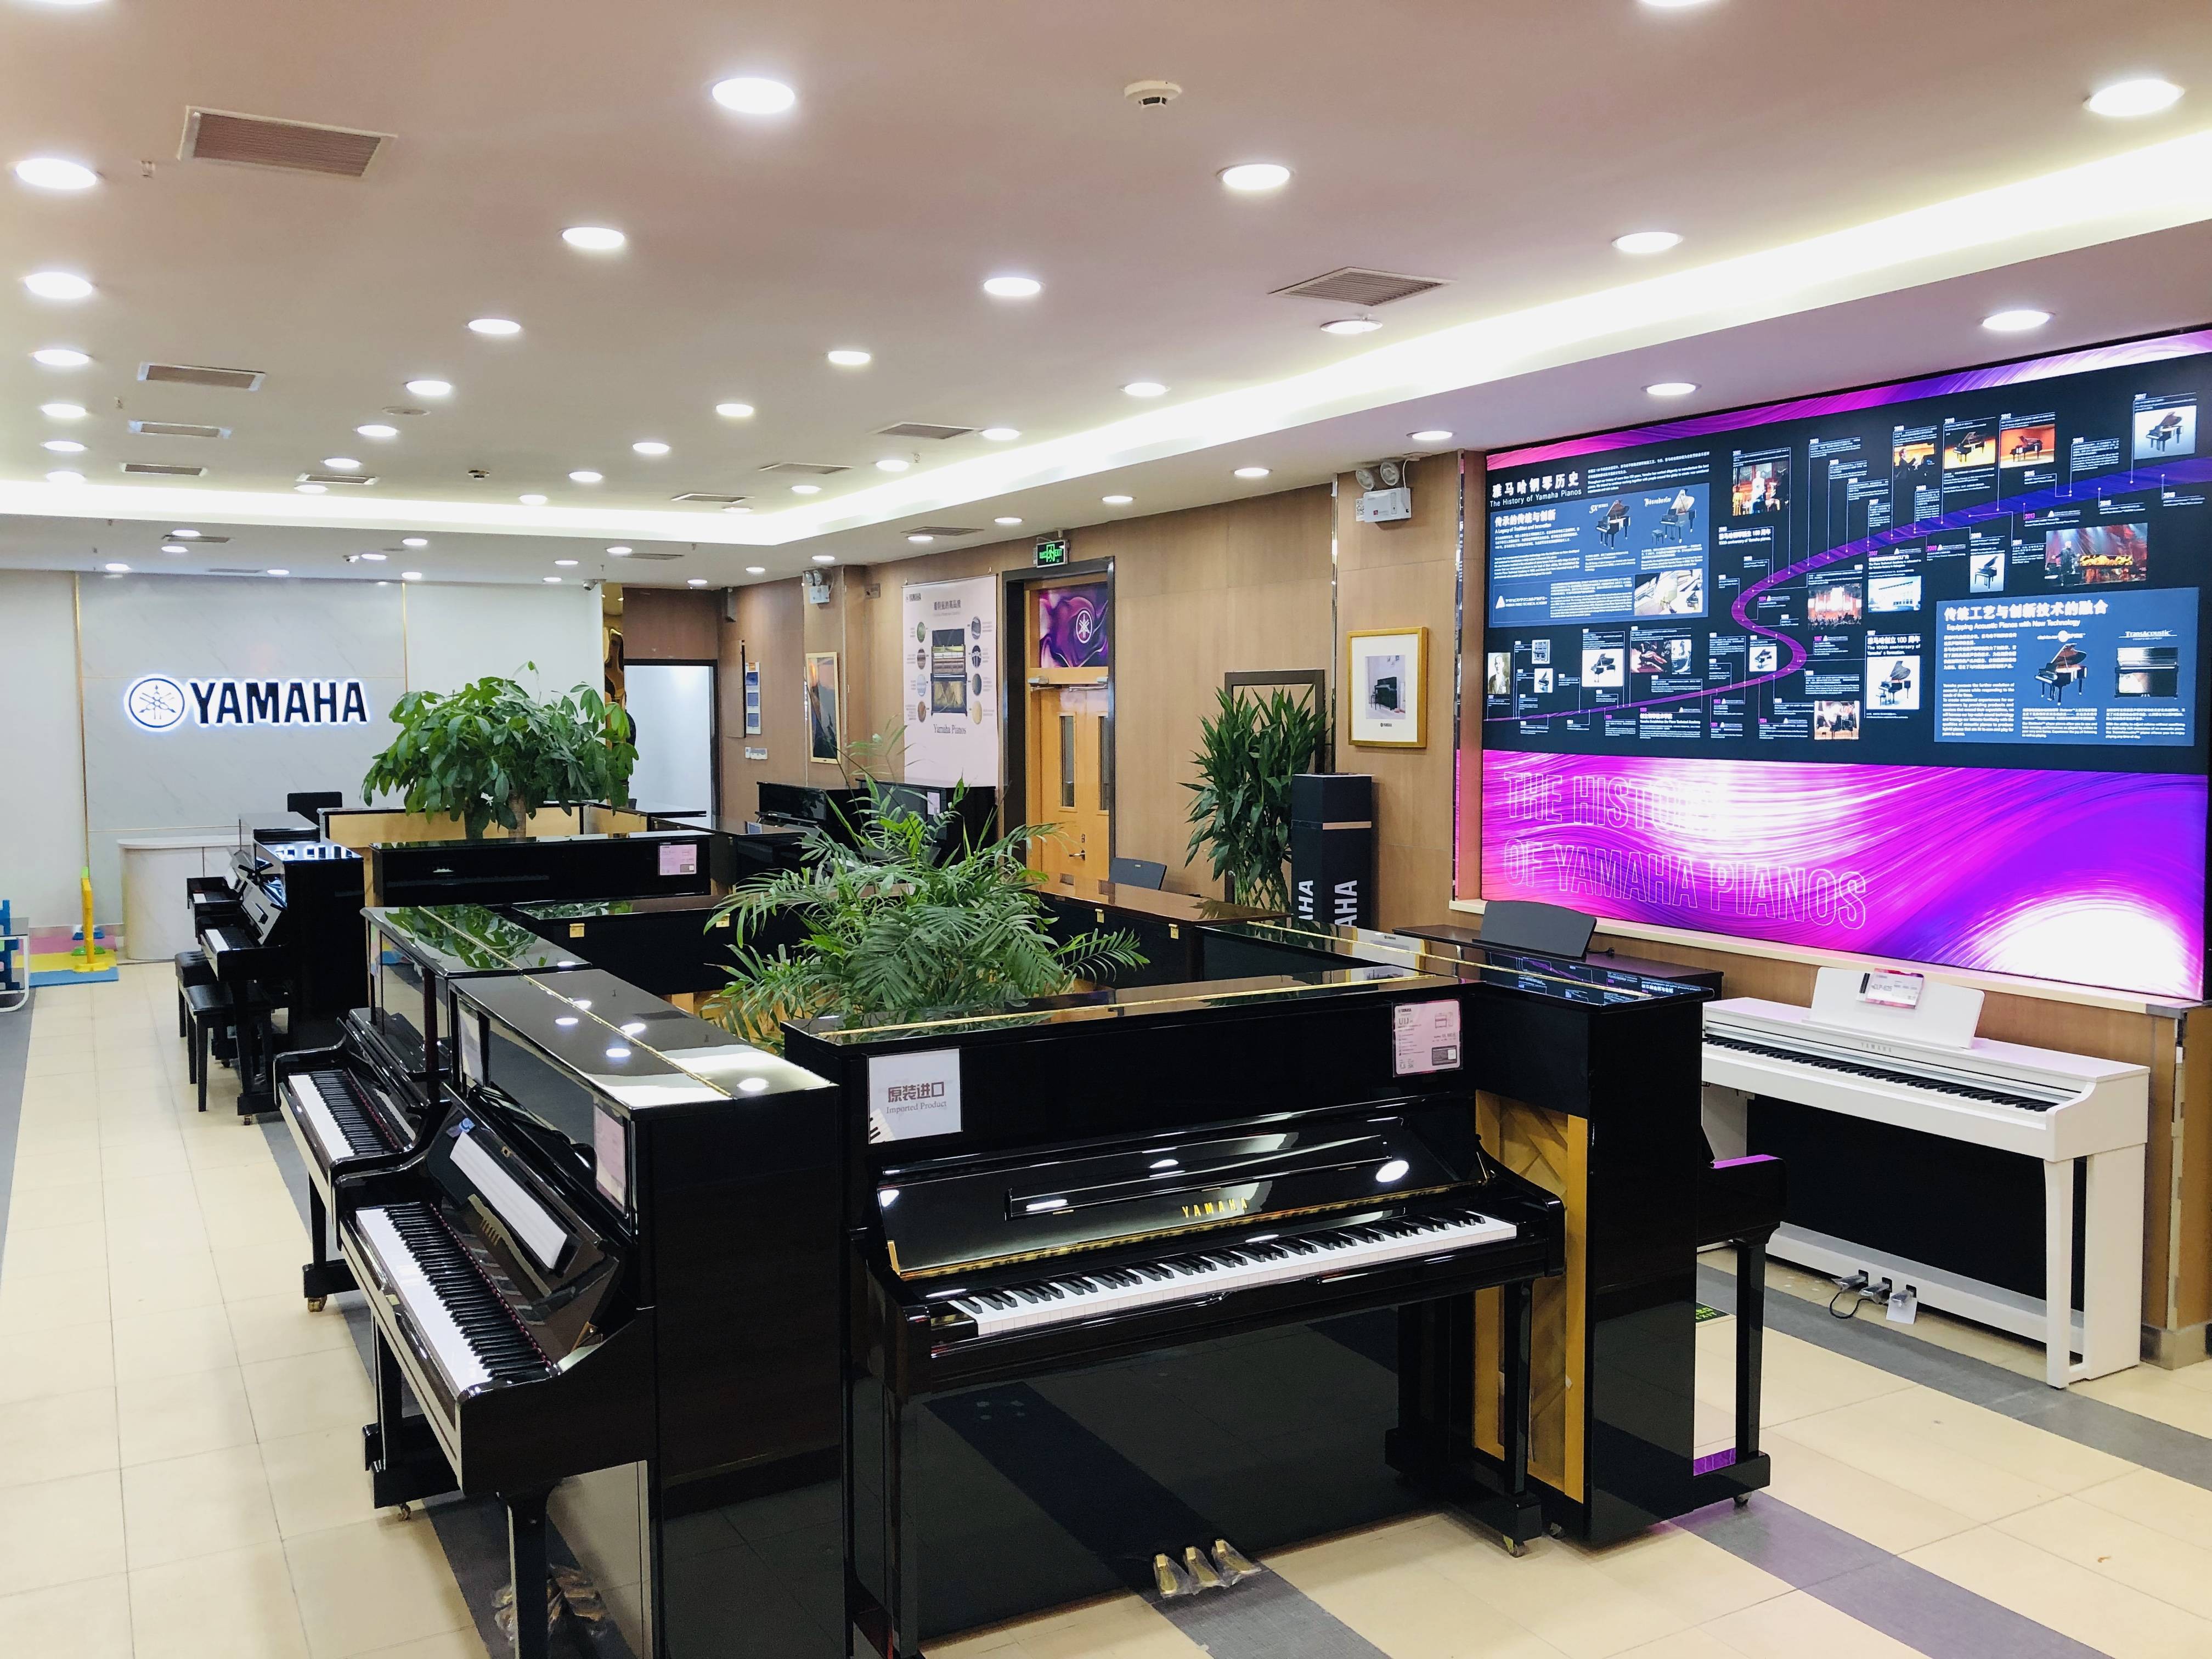 华厅集瑞骏业日新恭贺时代钢琴城雅马哈钢琴专卖店开张大吉